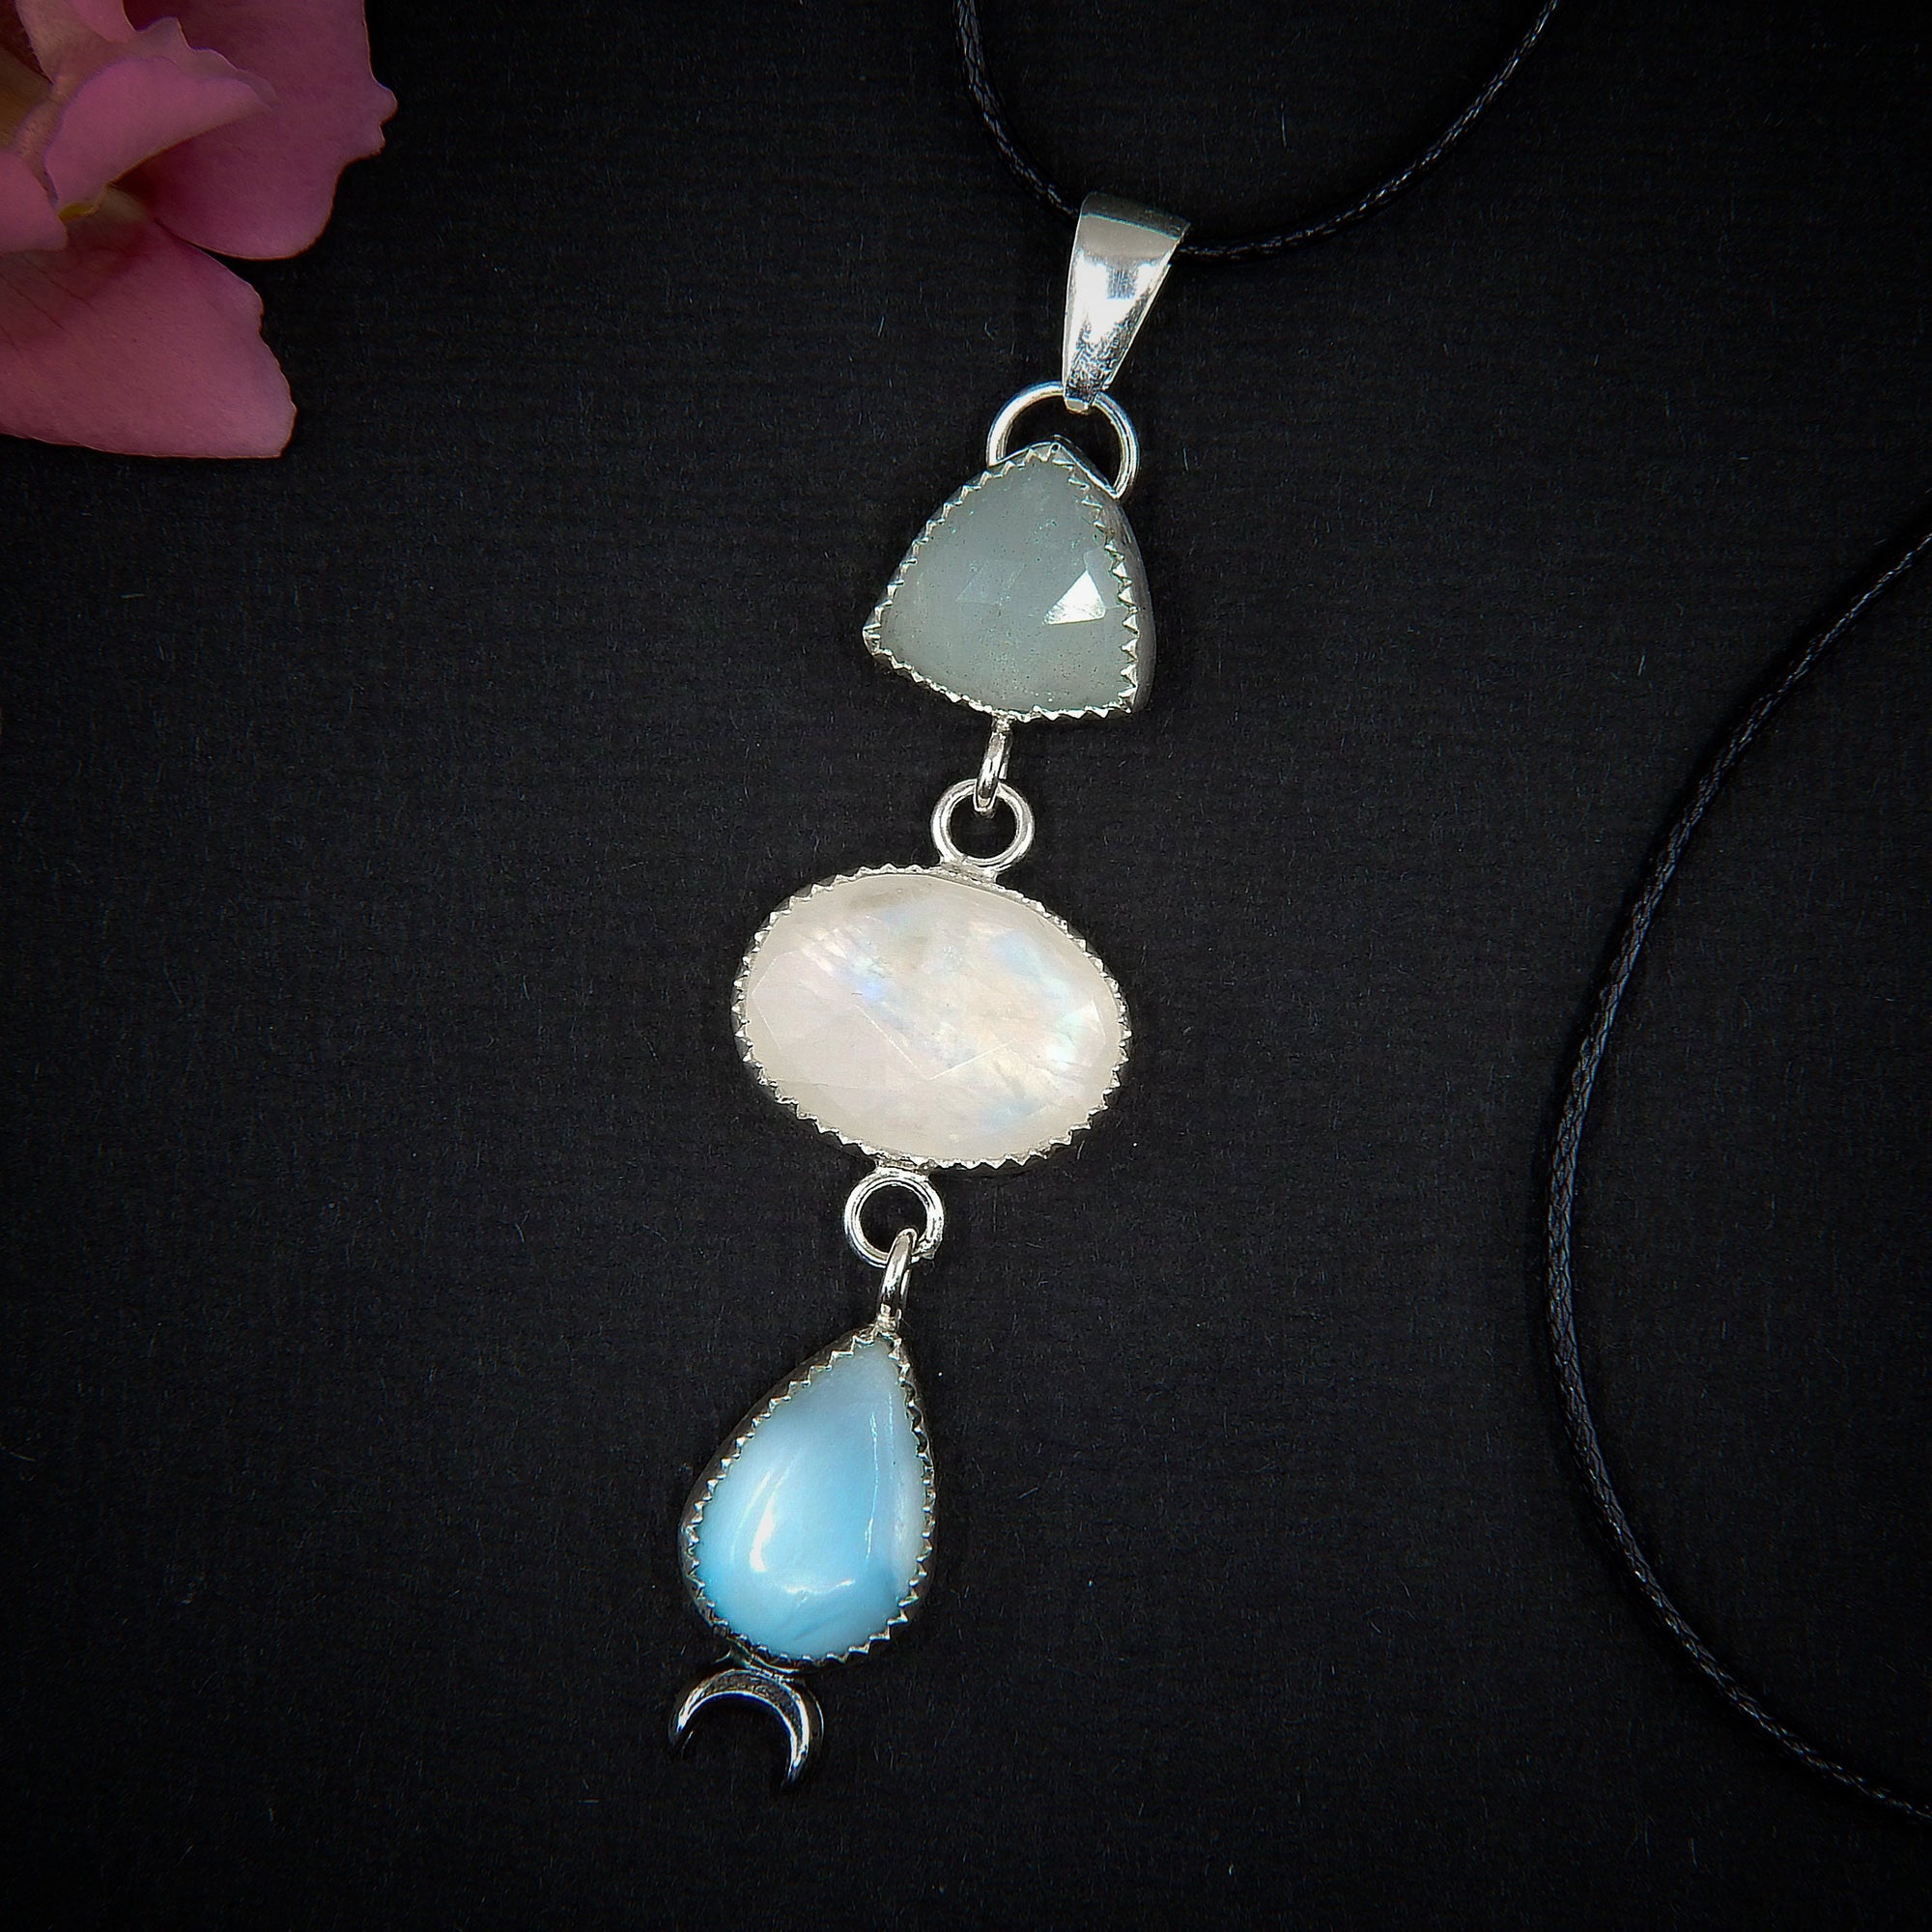 Aquamarine, Moonstone & Larimar Pendant - Sterling Silver - Triple Stone Moon Pendant - Moonstone Pendant - Rose Cut Aquamarine Necklace